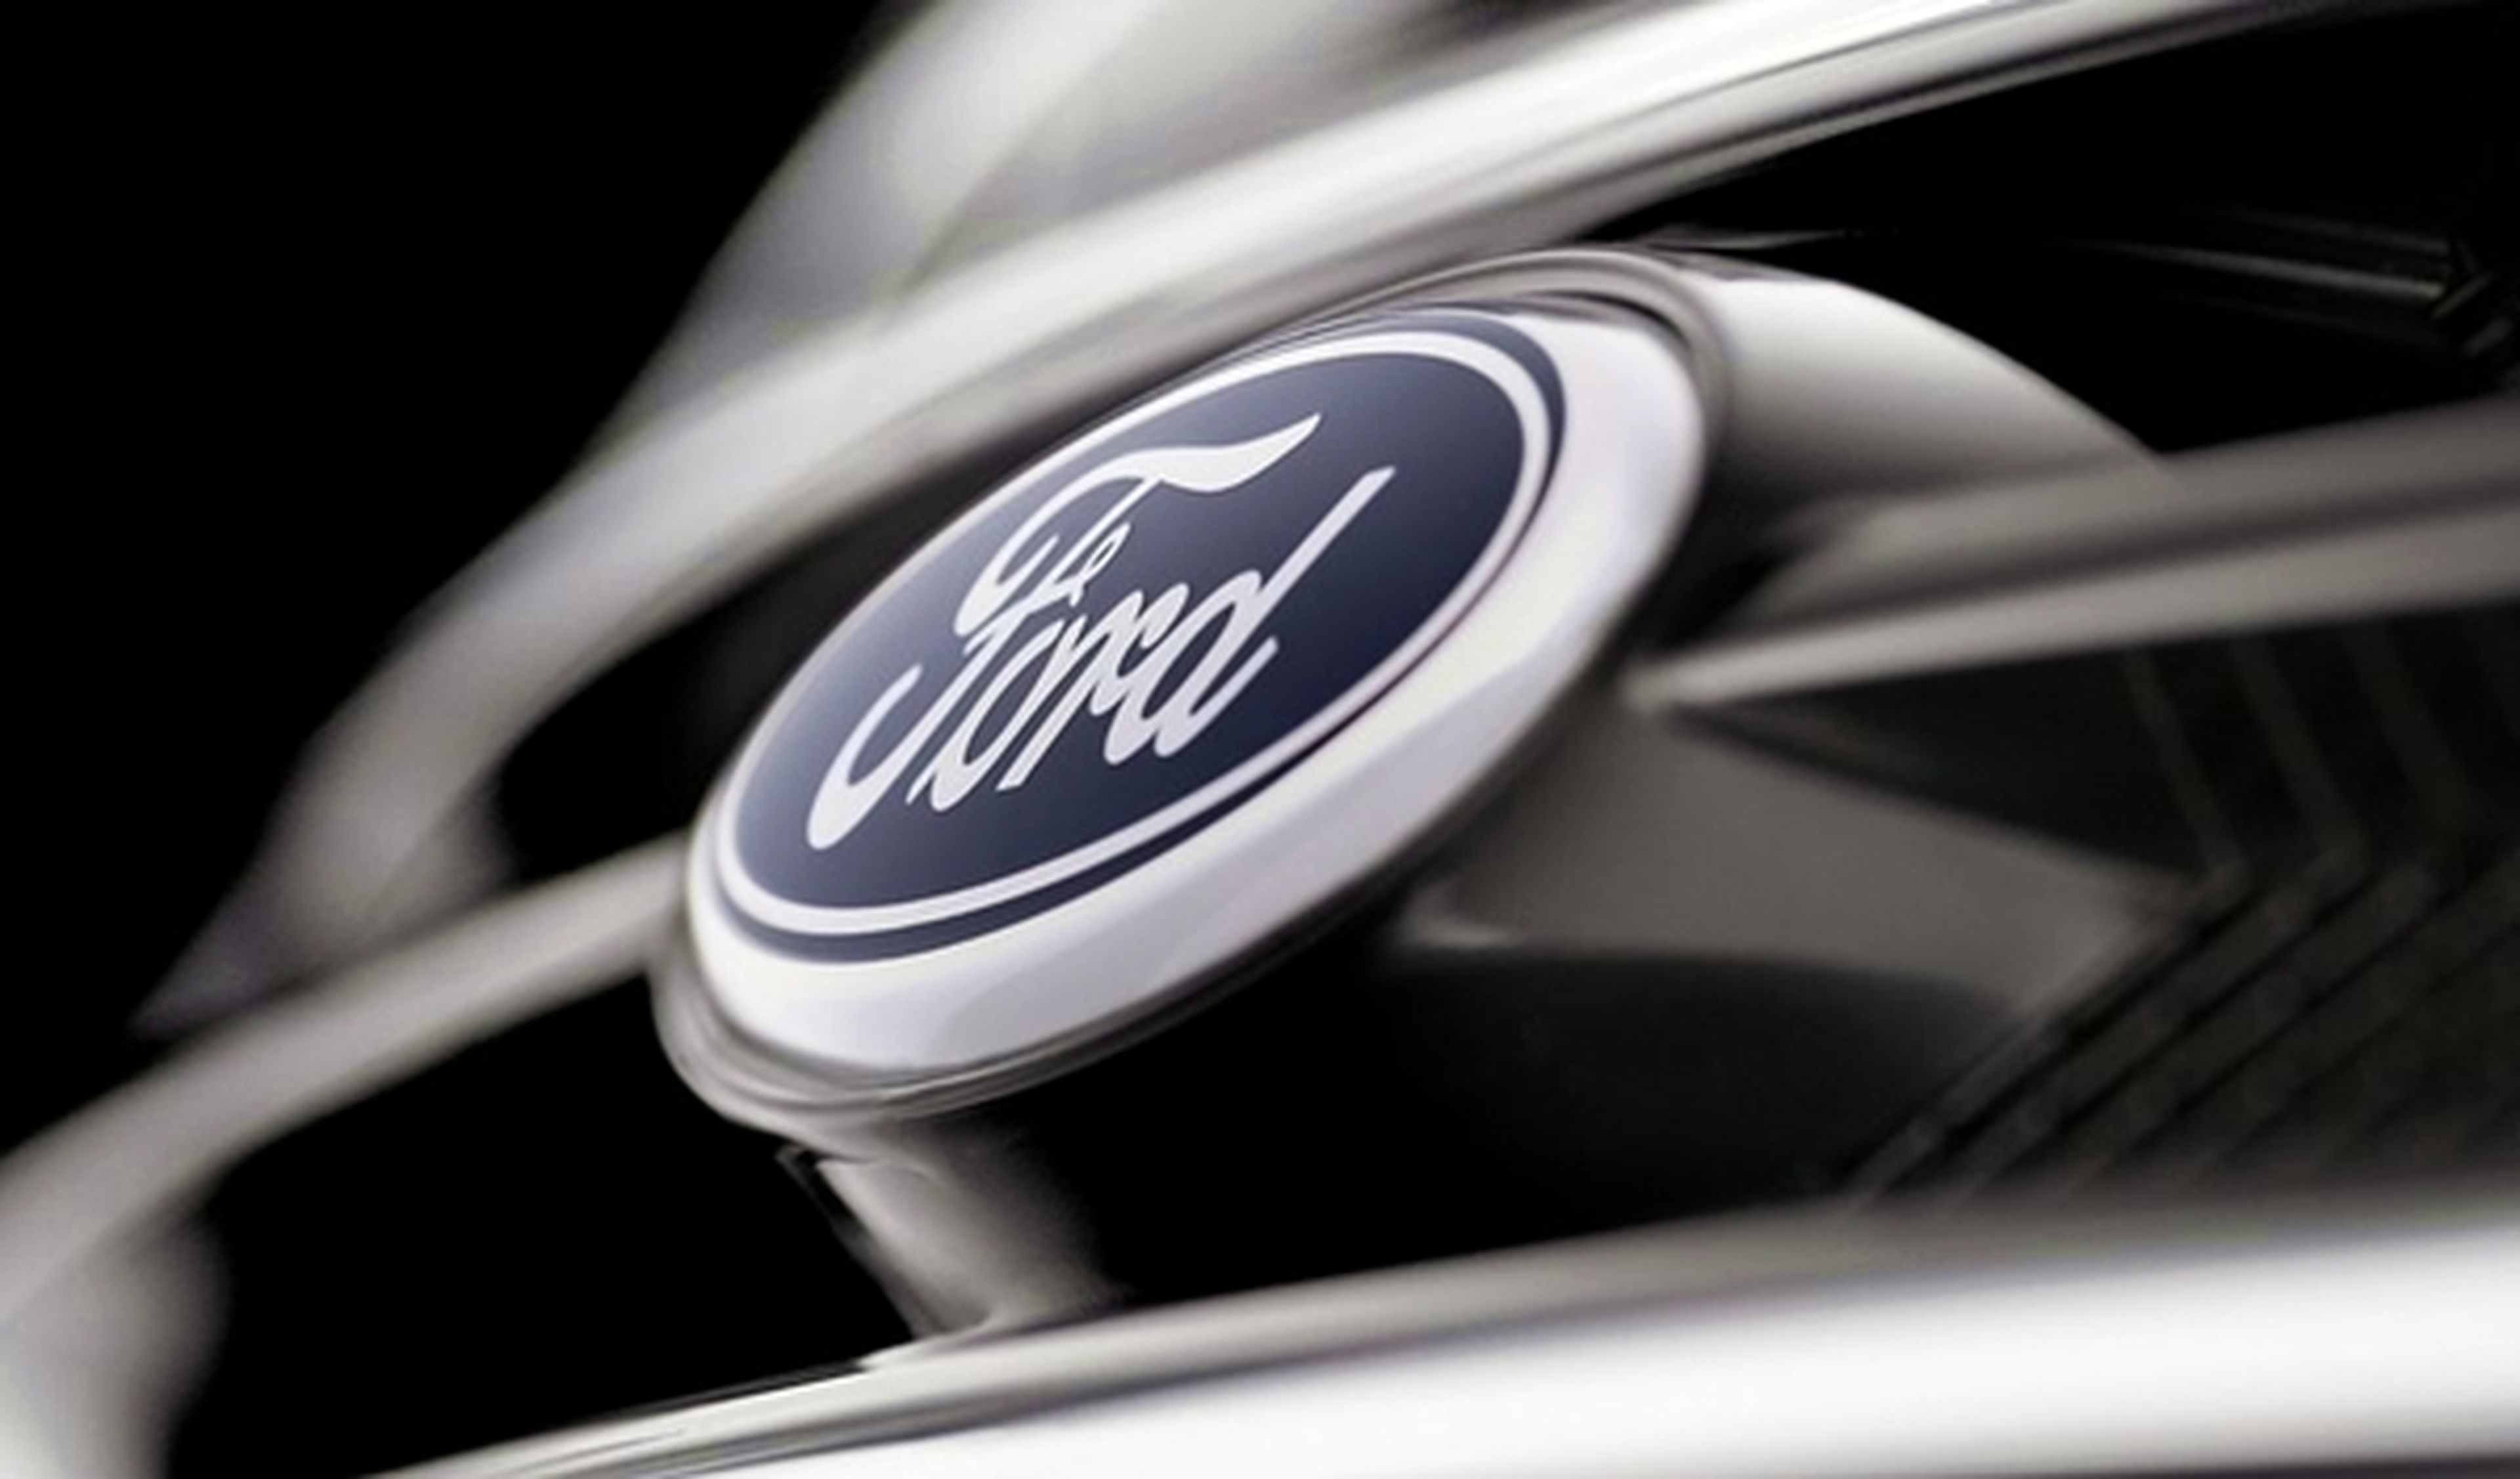 Ford descubrirá un 'concept' totalmente nuevo en Shanghai